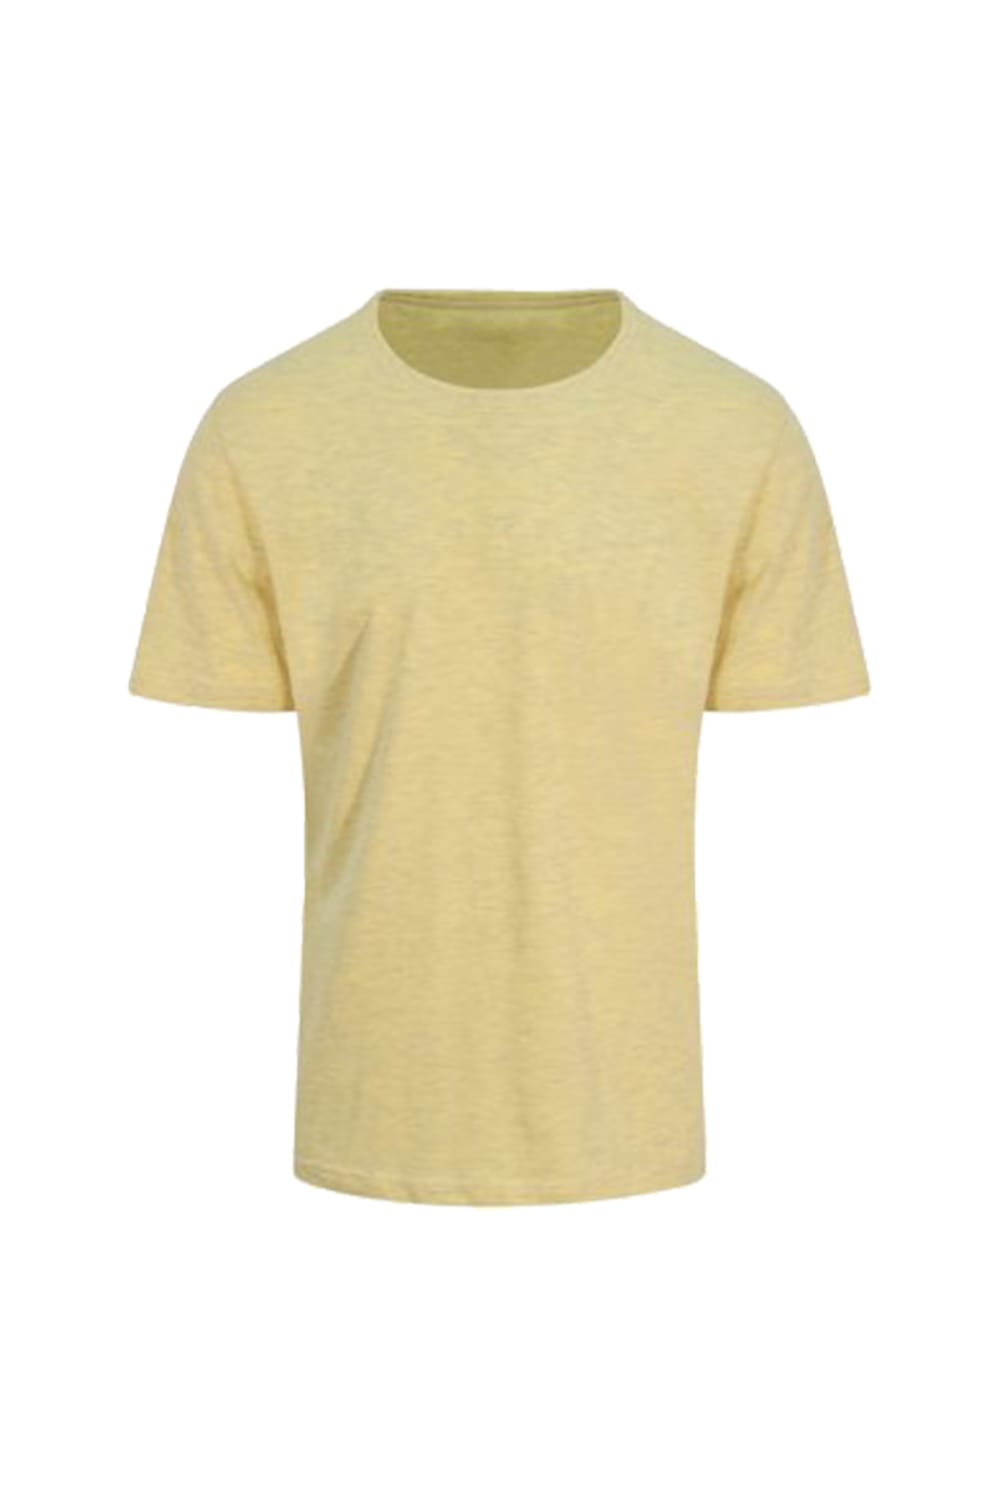 Just Ts Mens Surf T-Shirt - Surf Yellow